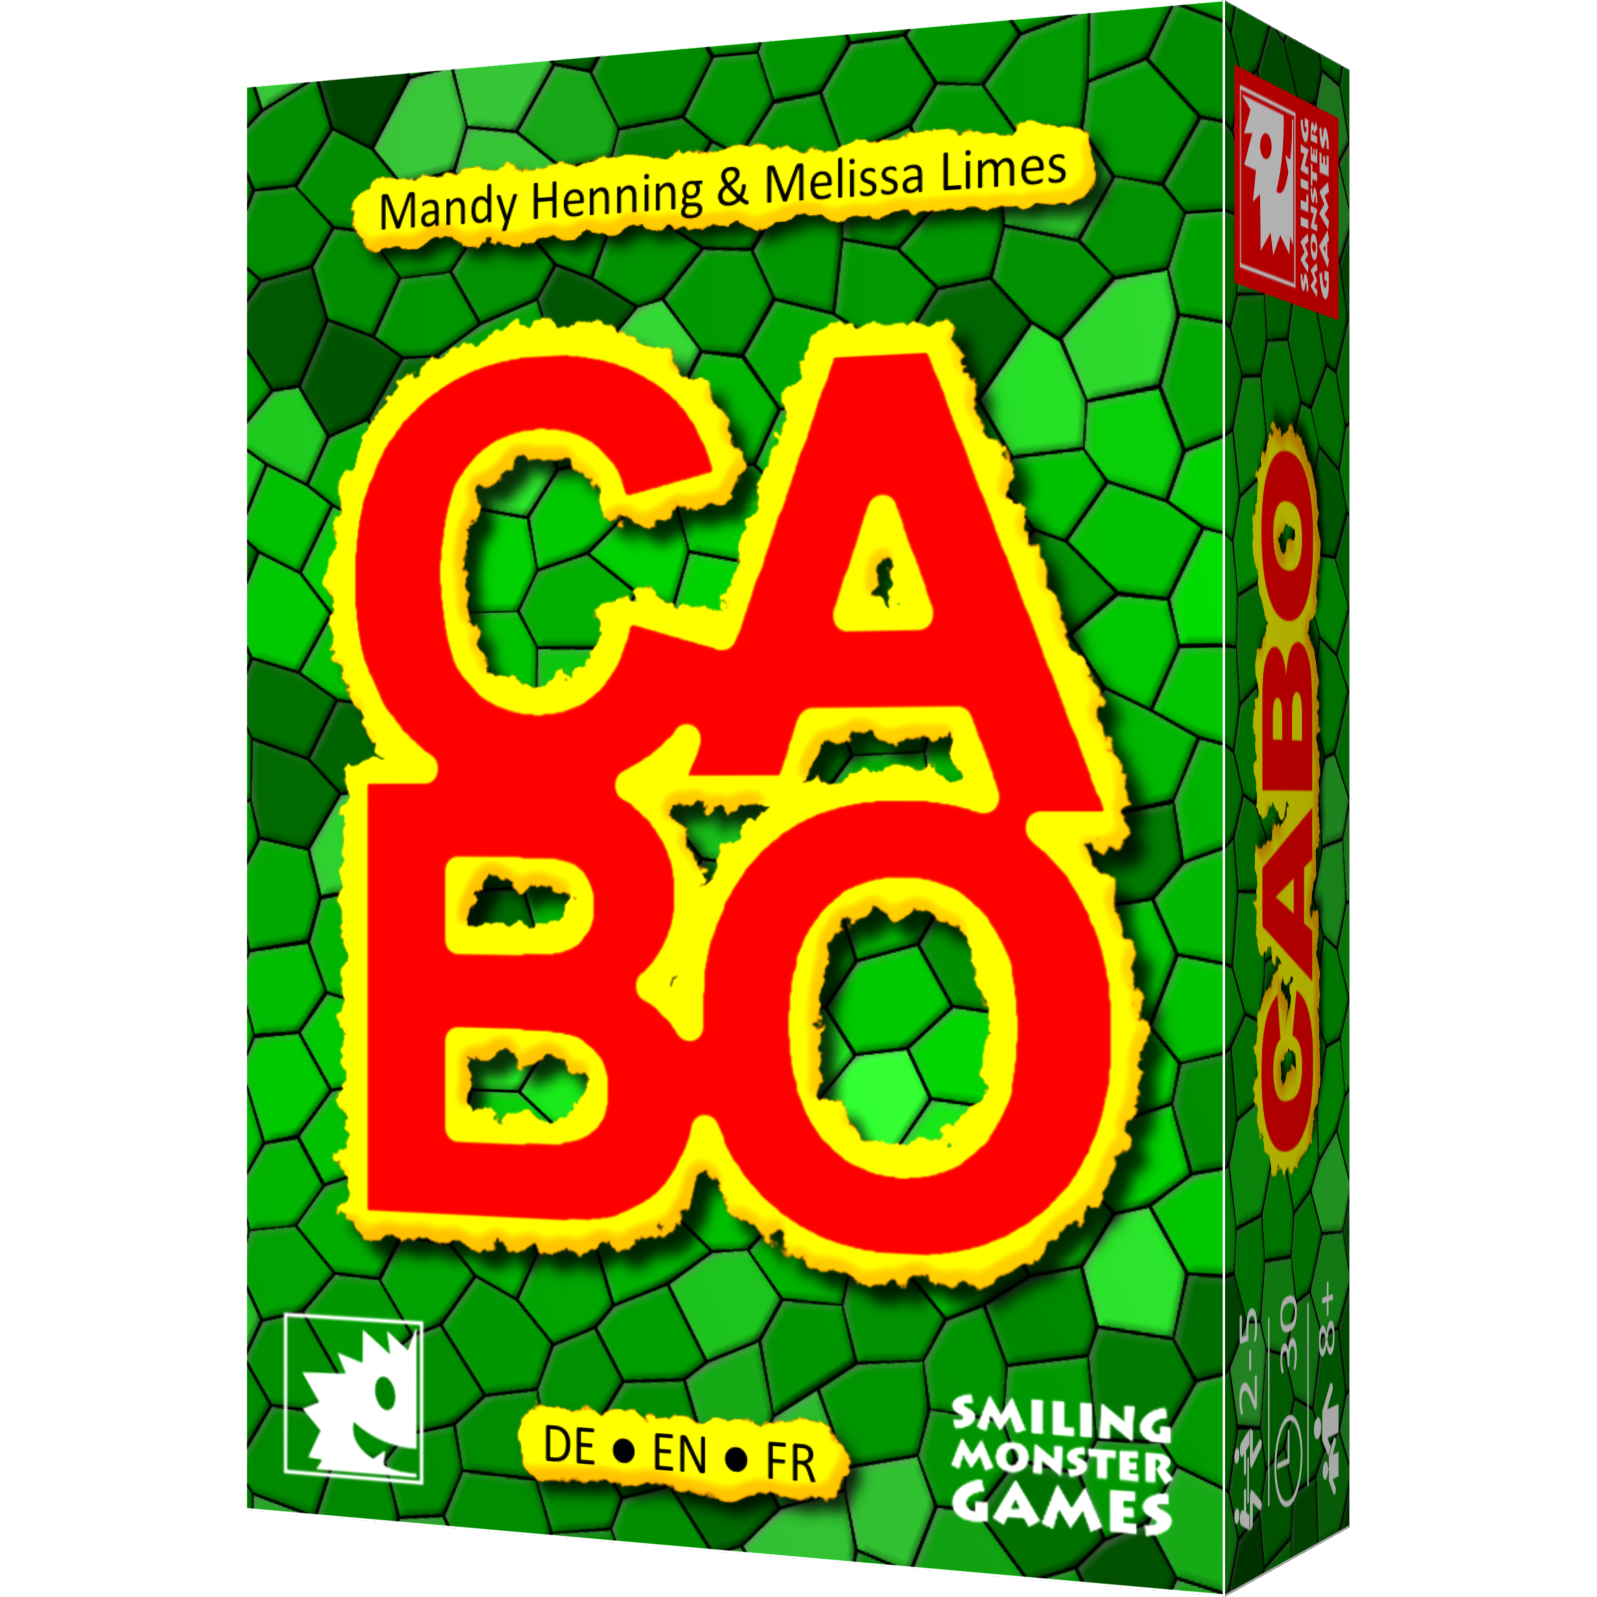 CABO - Kartenspiel